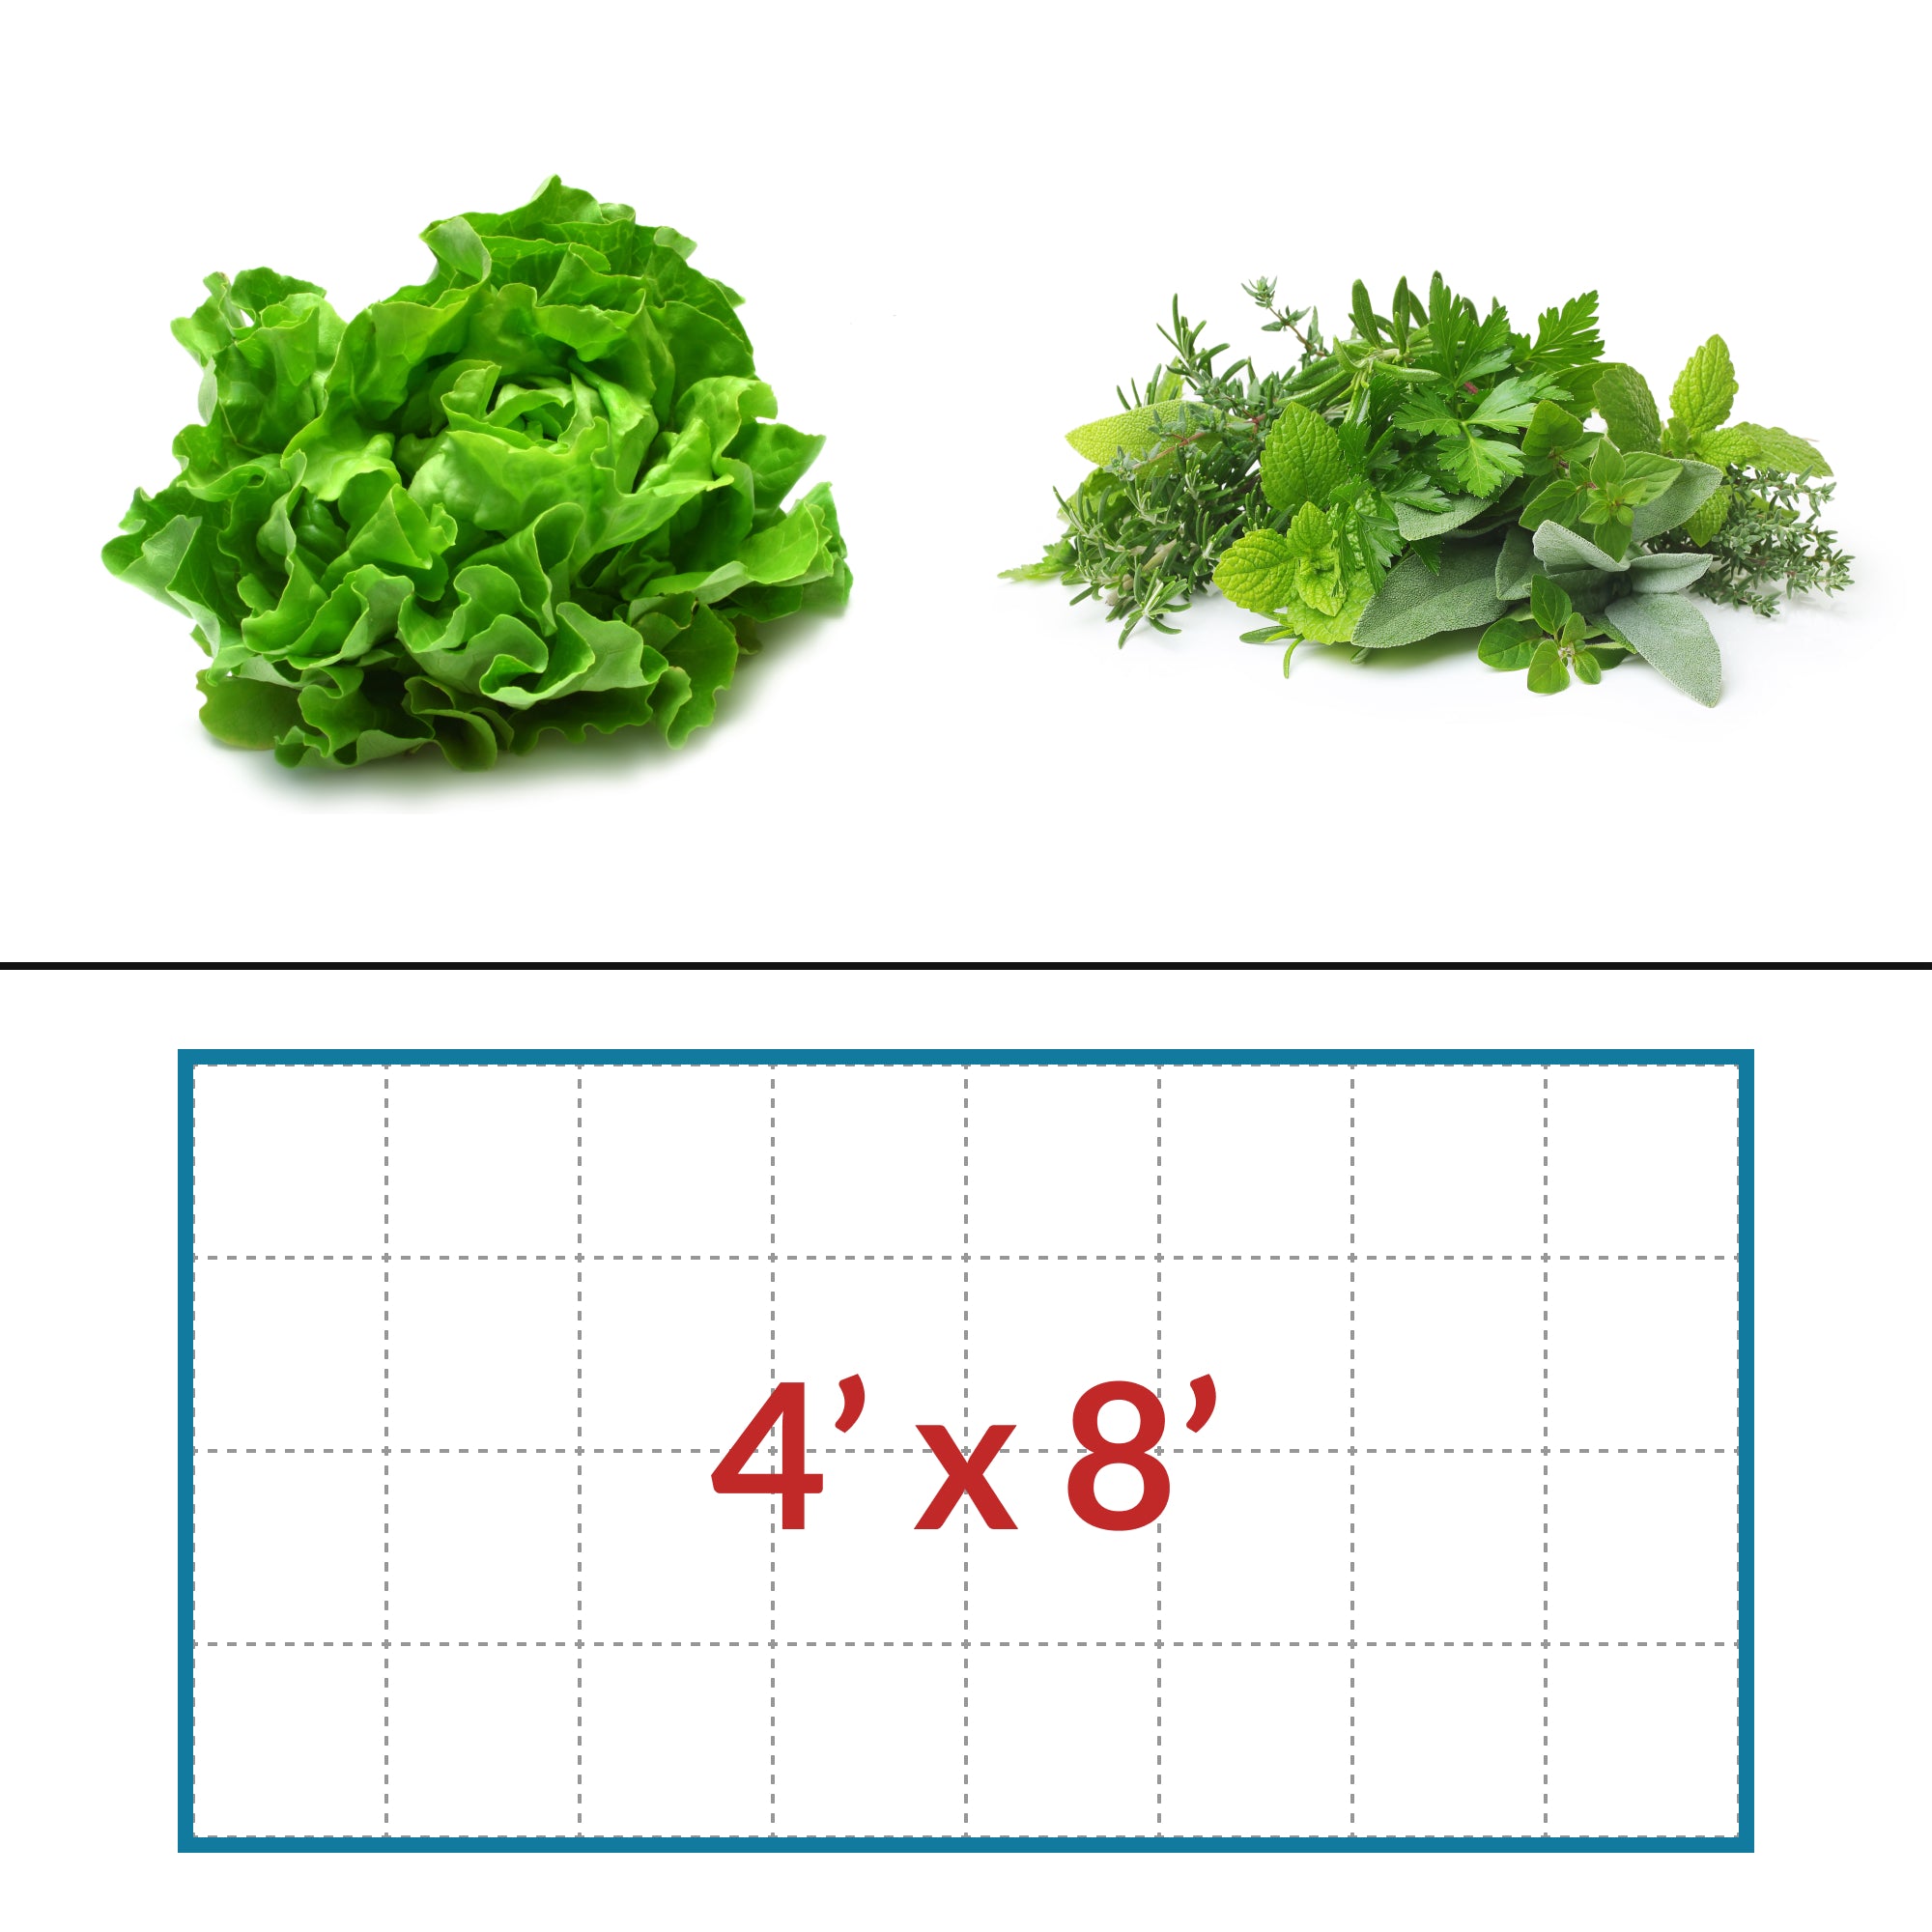 Lettuce - Herbs 4' x 8' LED Grow Light Lighting Kit